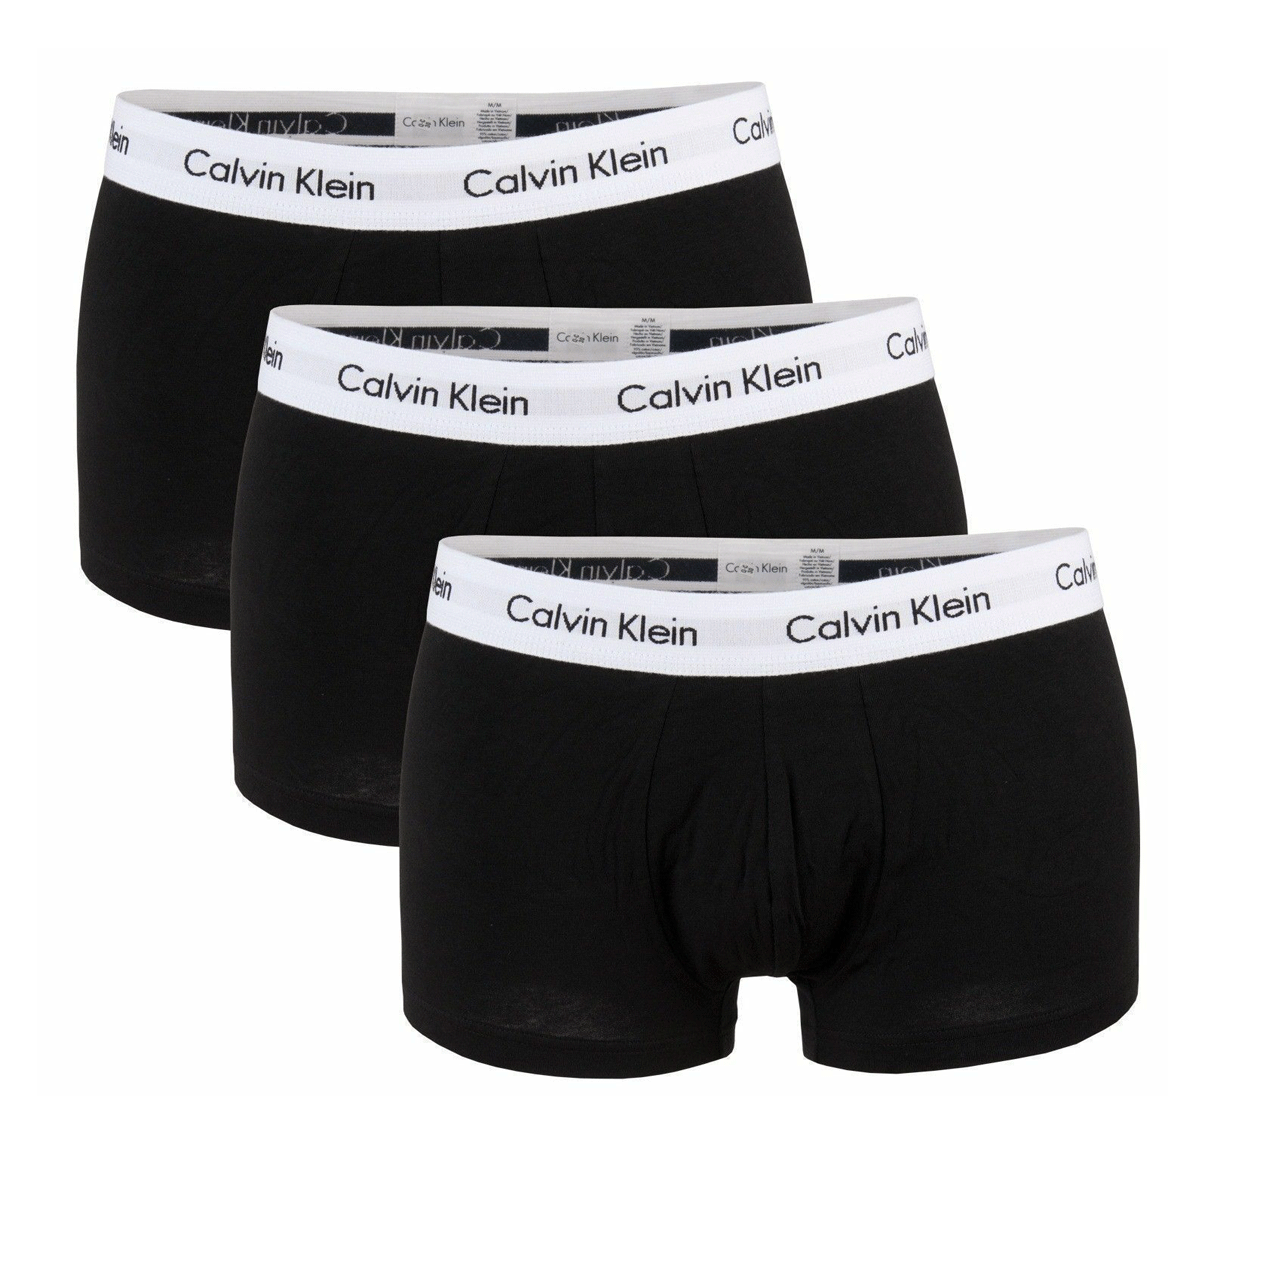 Men's Calvin Klein Cotton 3 Pack Underwear Boxers Low Rise Trunks Briefs U2662G-001 freeshipping - Benson66